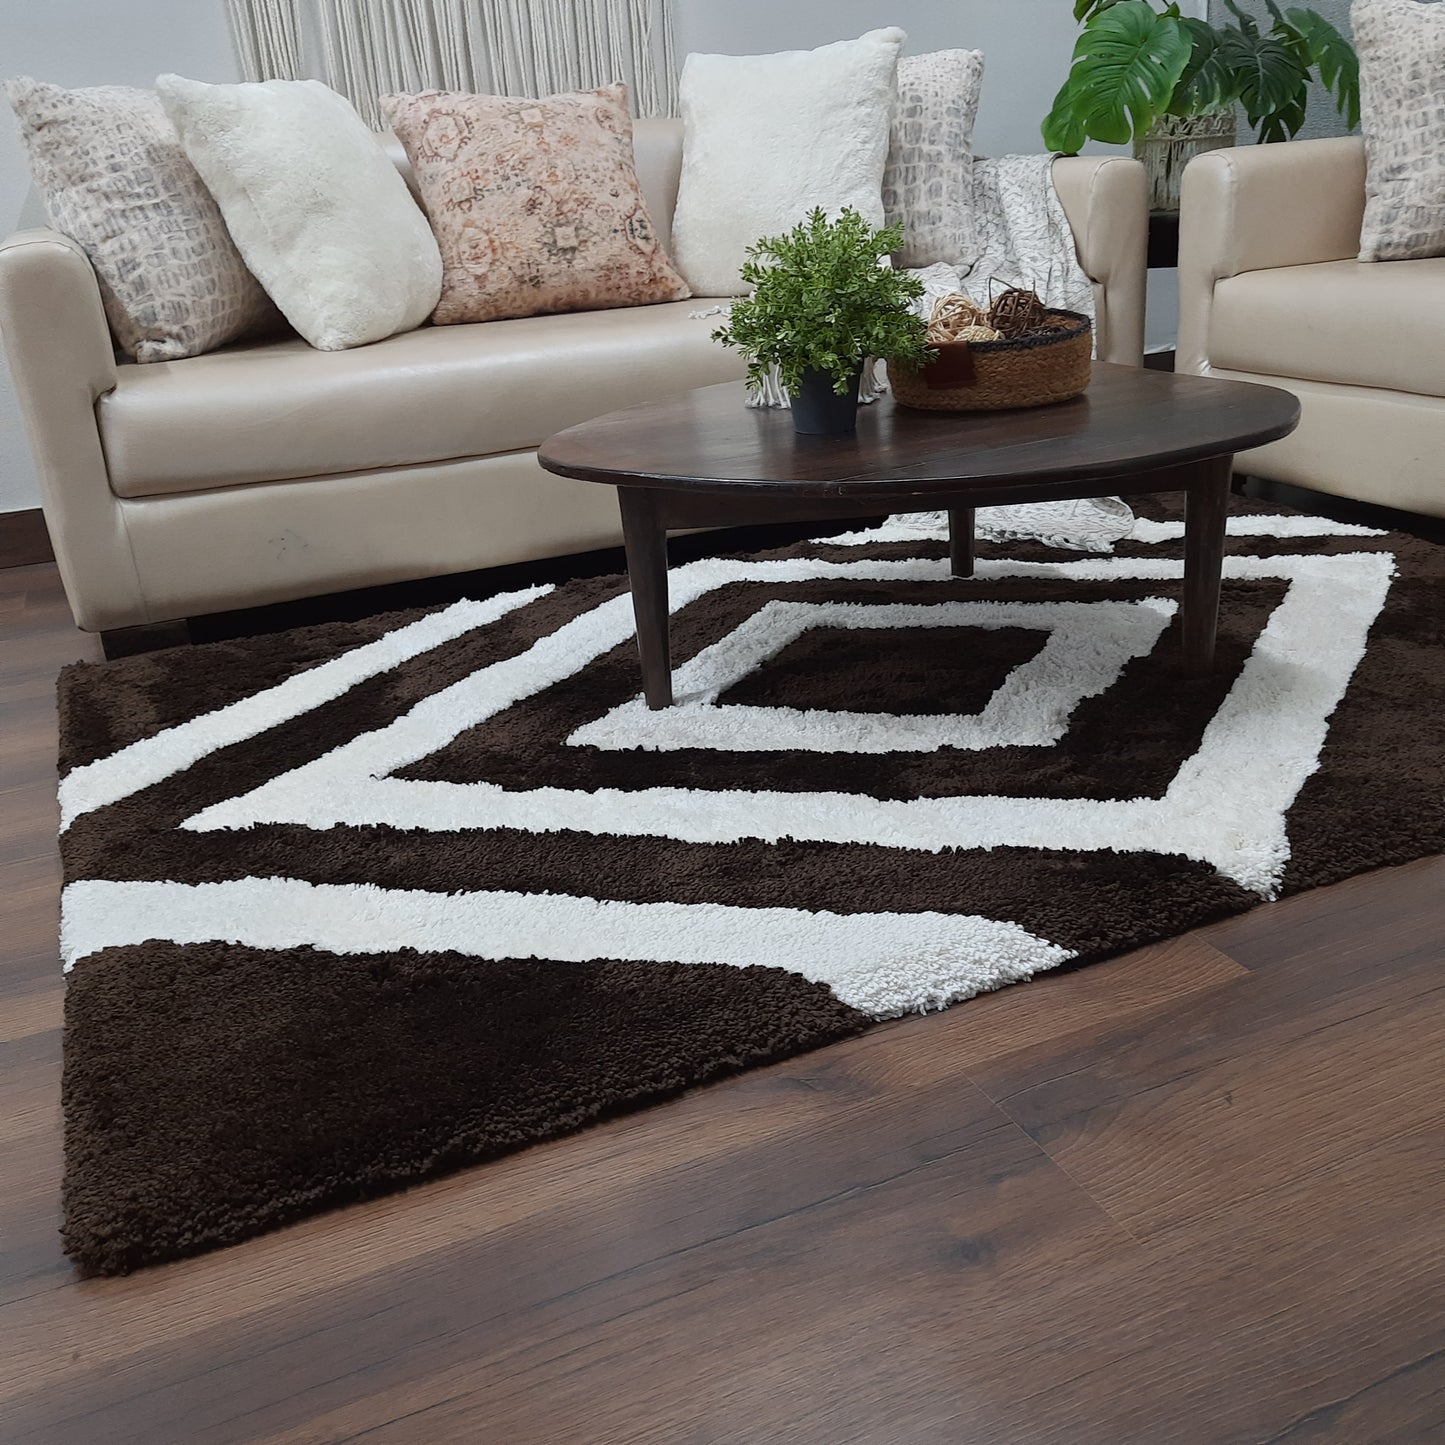 Avioni Home Atlas Collection - Moroccan Style Microfiber Carpet In  Dark Coffee & White| Soft, Non-Slip, Easy to Clean